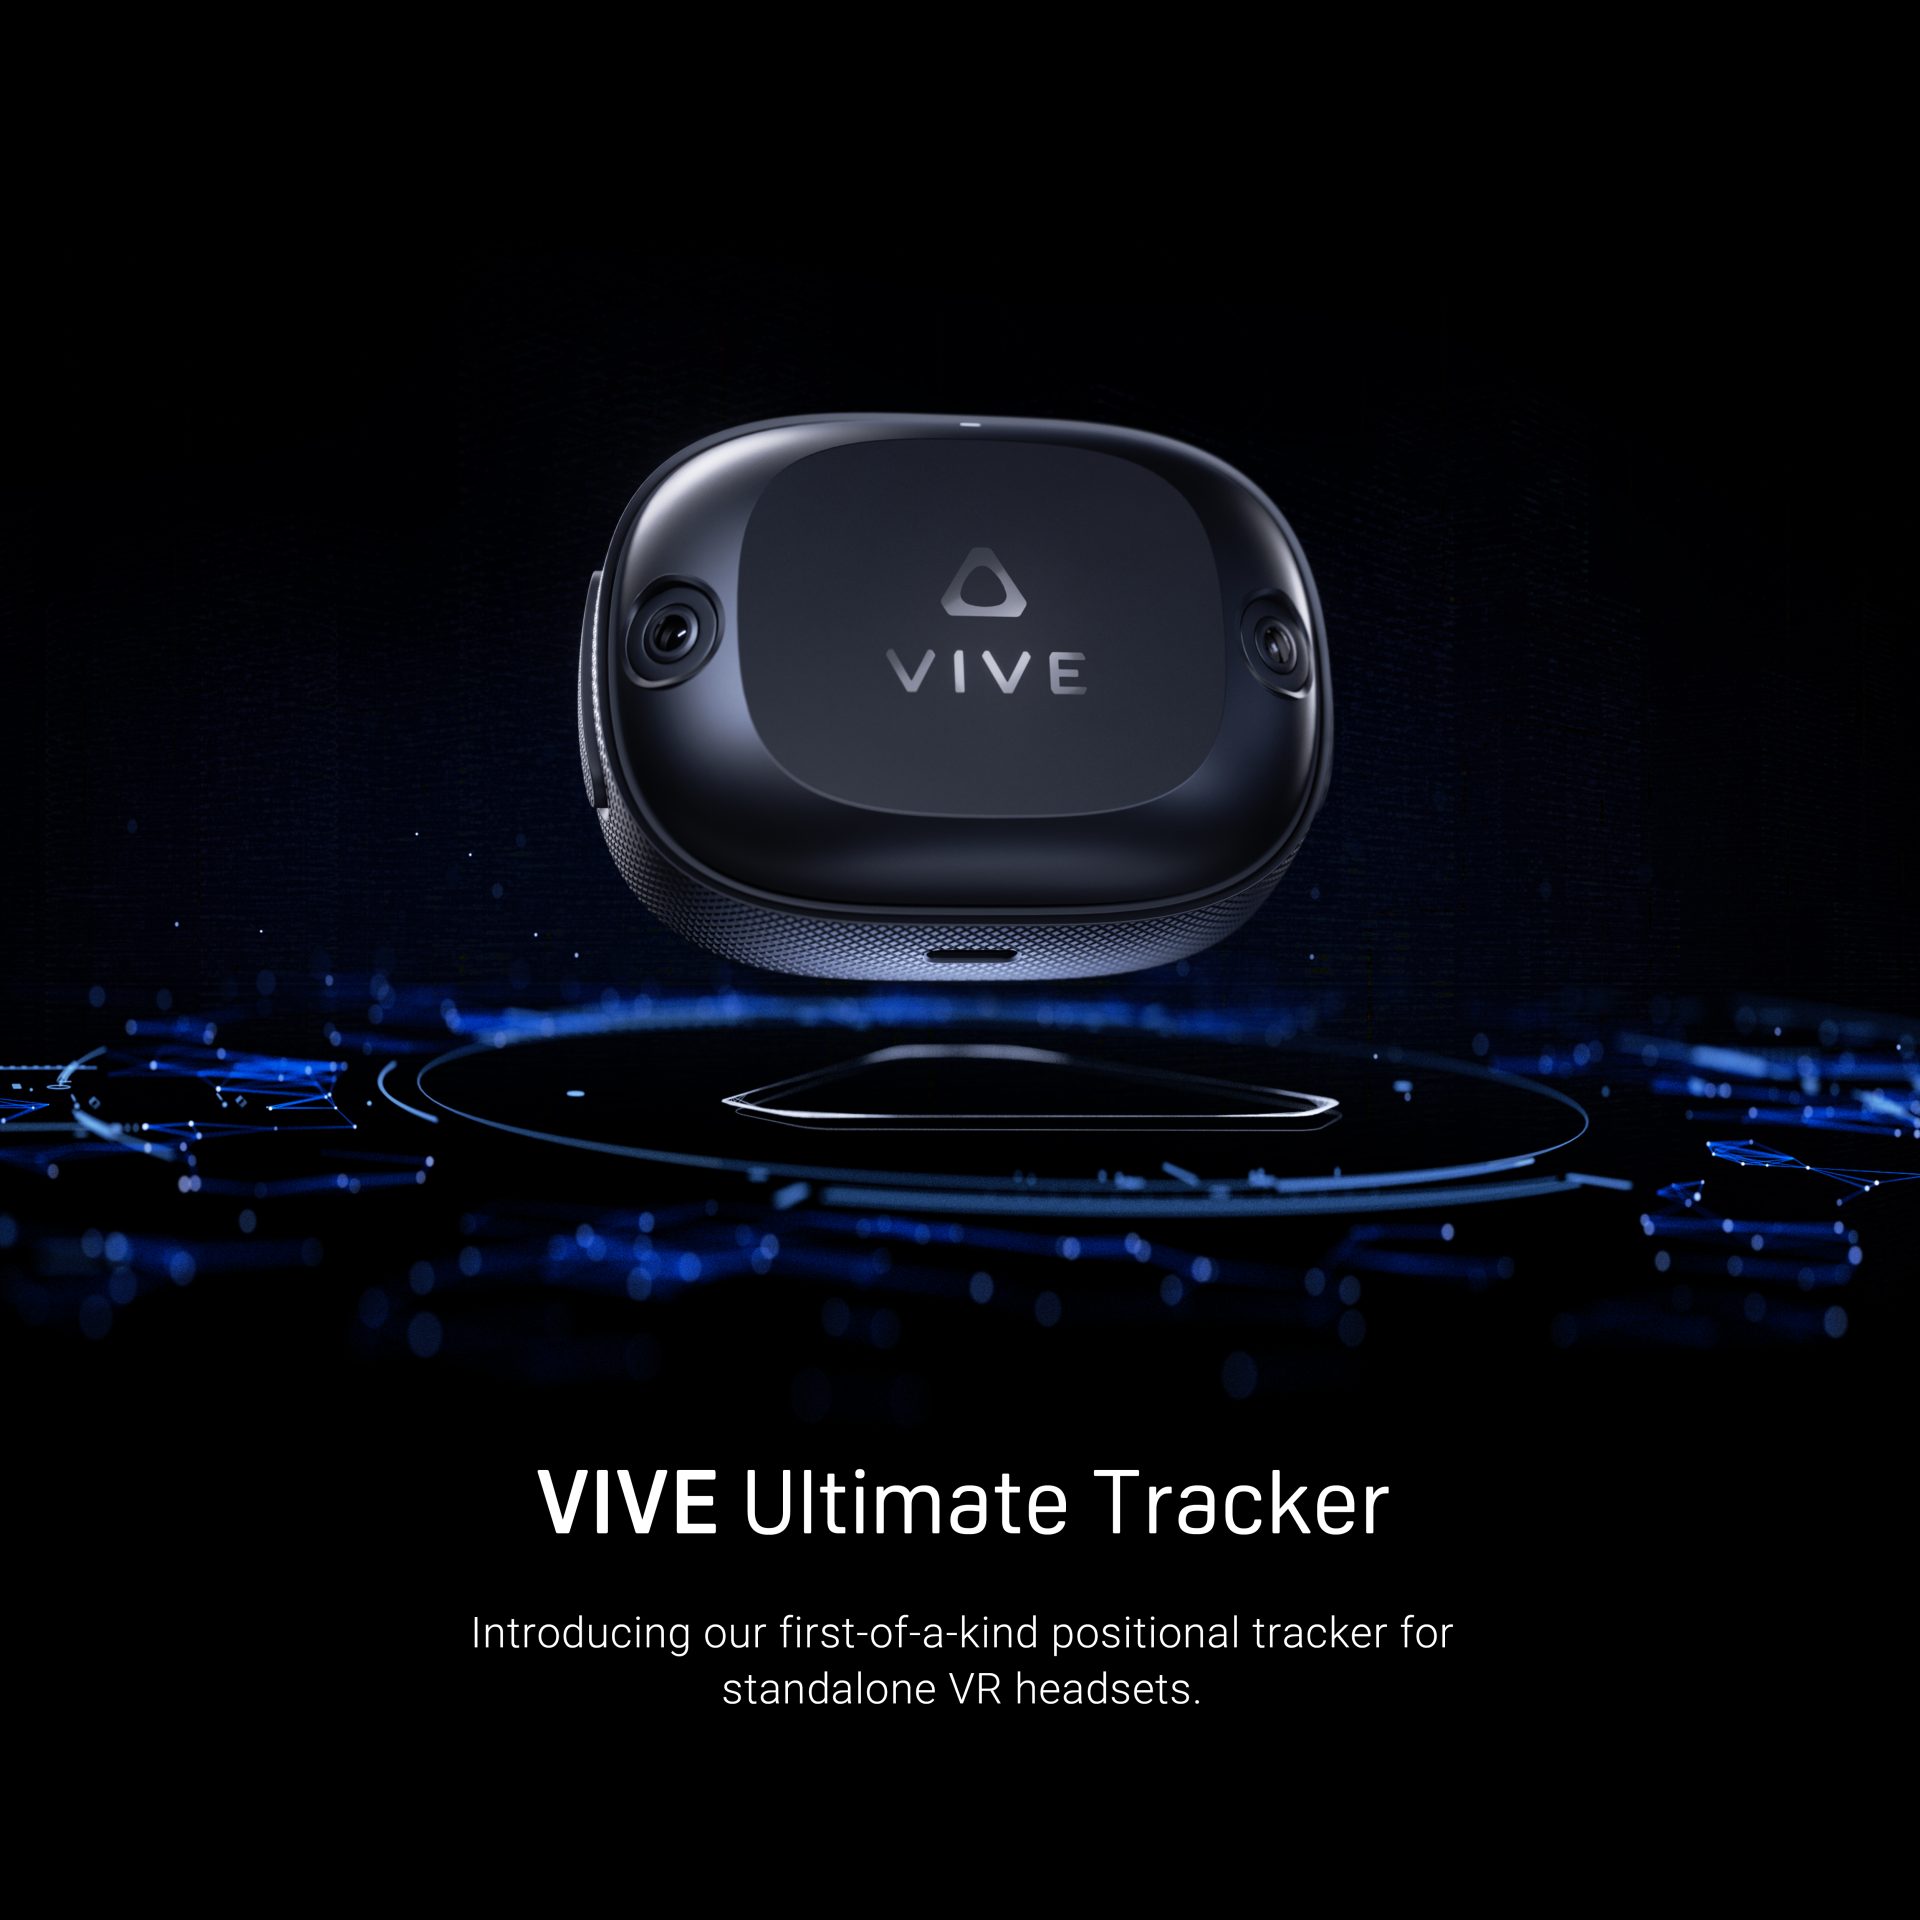 Ultimate Tracker (źródło: HTC VIVE)